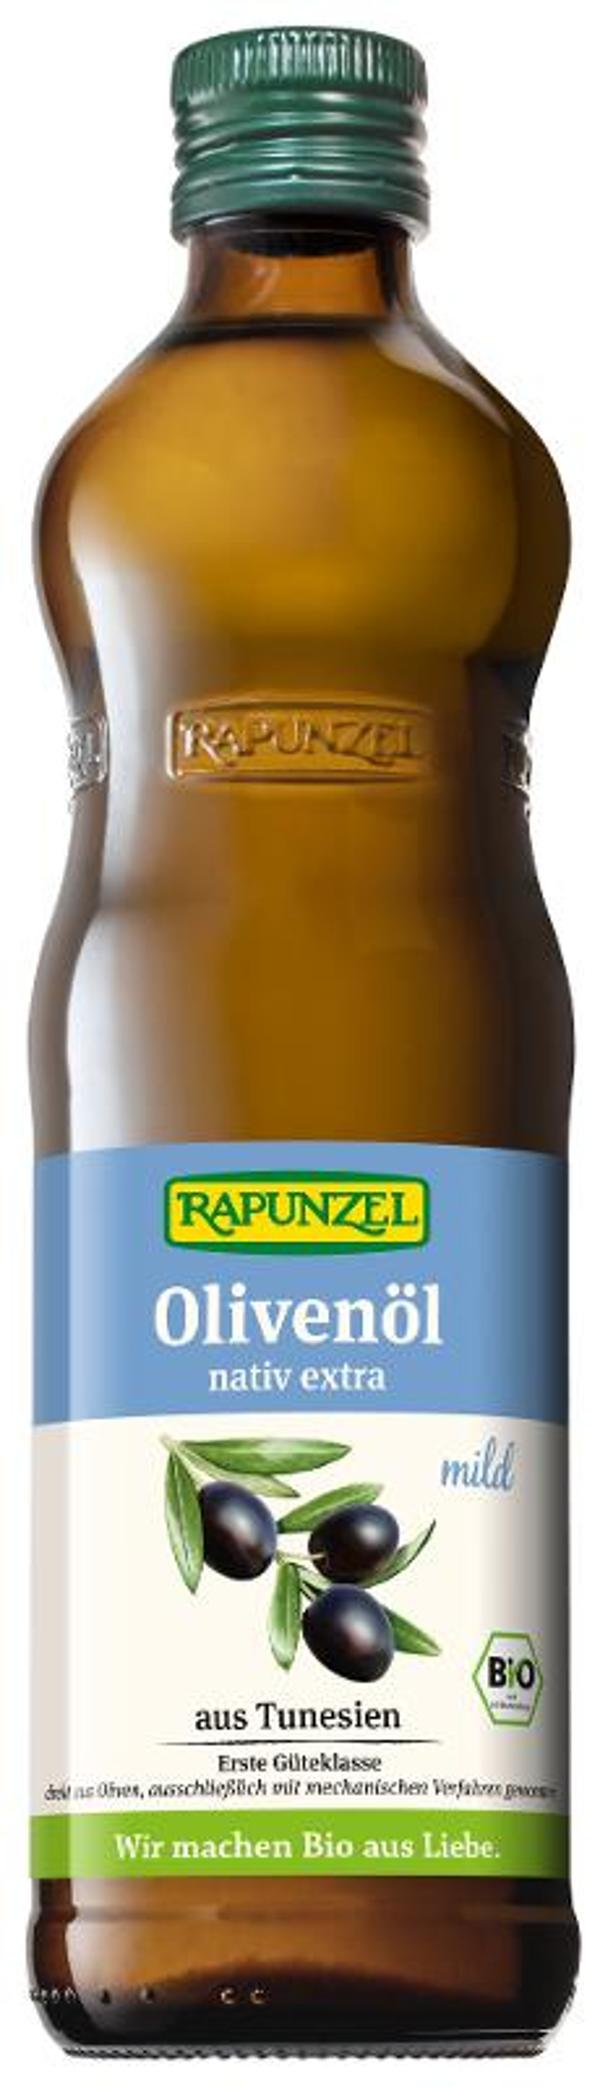 Produktfoto zu Olivenöl mild nativ extra 0,5l Rapunzel